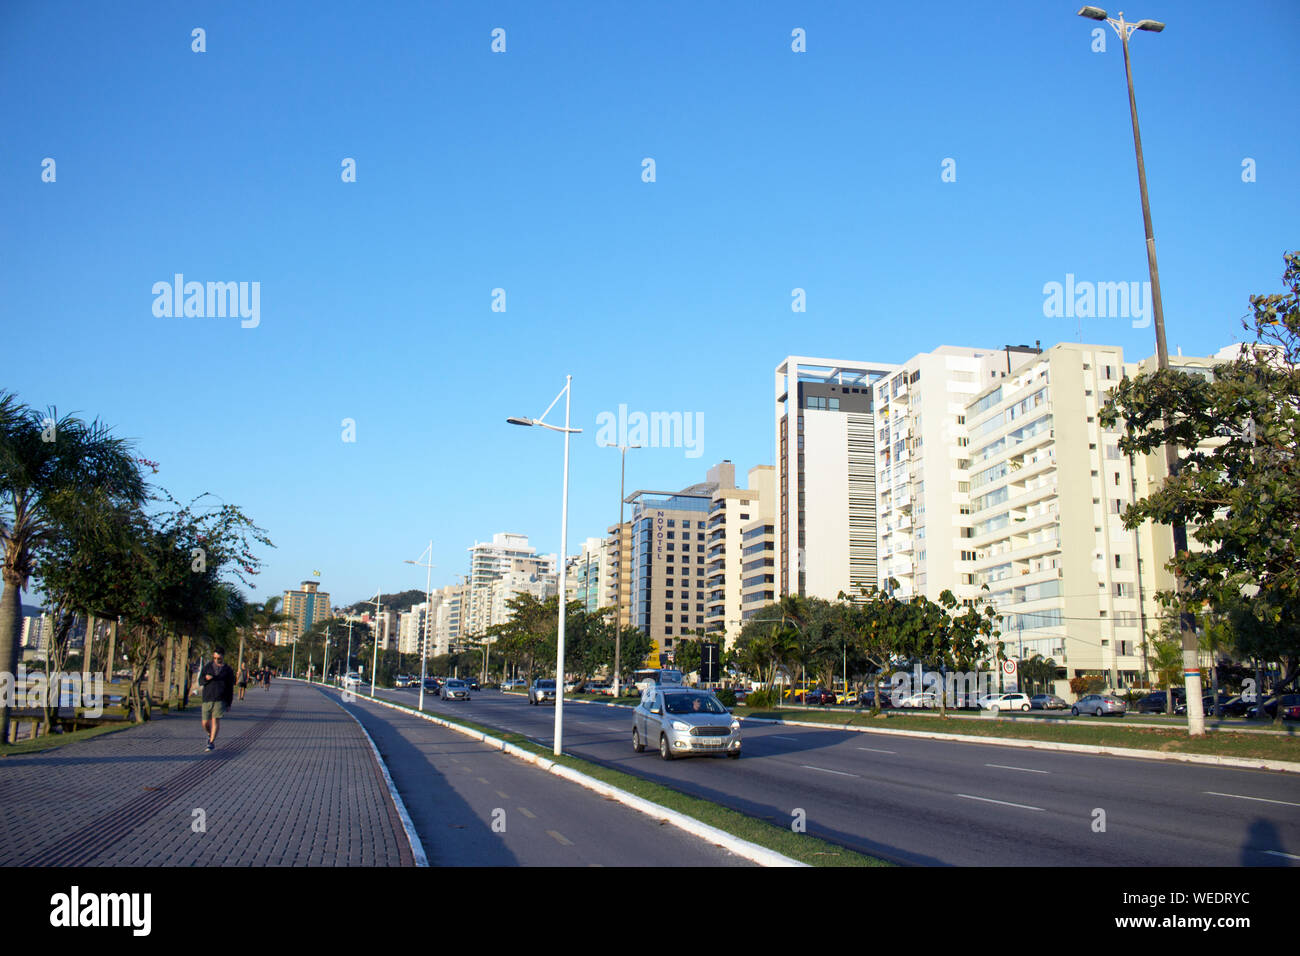 Beira Mar Norte Avenue, in der Hauptstadt von Florianópolis, Bundesstaat Santa Catarina - Brasilien Stockfoto